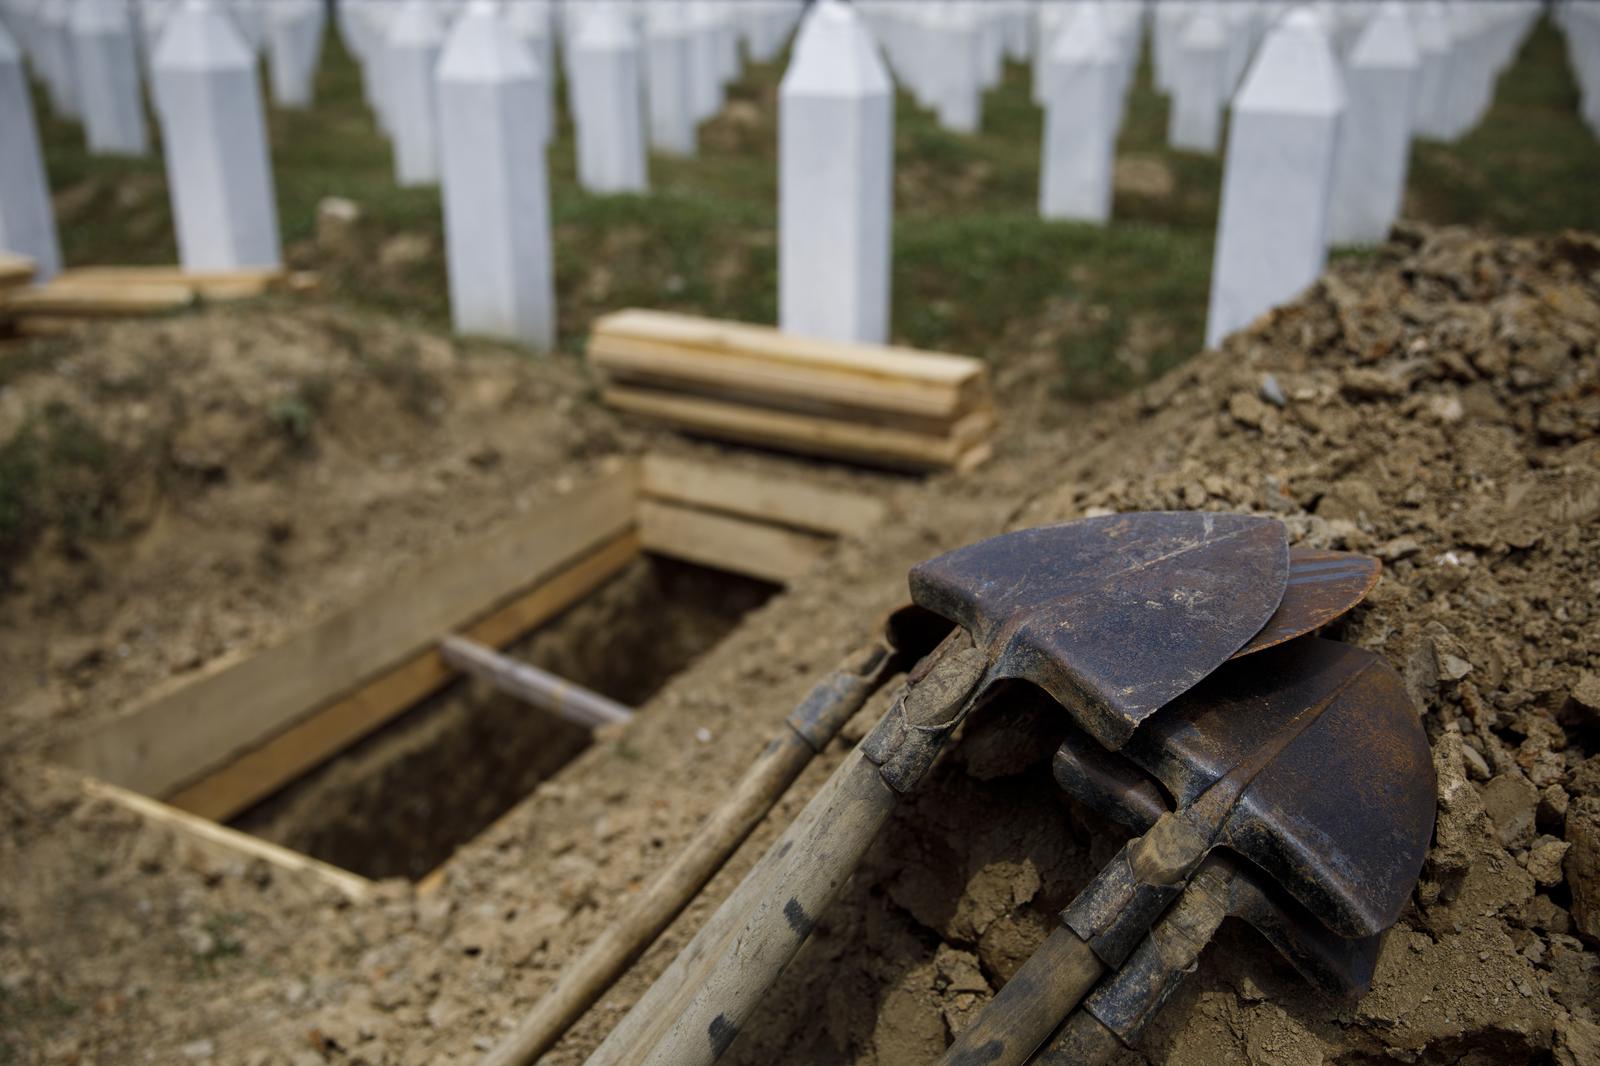 09.07.2021., Potocari, Bosna i Hercegovina - U Memorijalnom centru Srebrenica - Potocari zavrseno je iskopavanje mezara u koje ce biti spusteni posmrtni ostaci devetnaest zrtava genocida u Srebrenici, koje ce biti ukopane na kolektivnoj dzenazi 11. jula ove godine.
Photo: Armin Durgut/PIXSELL